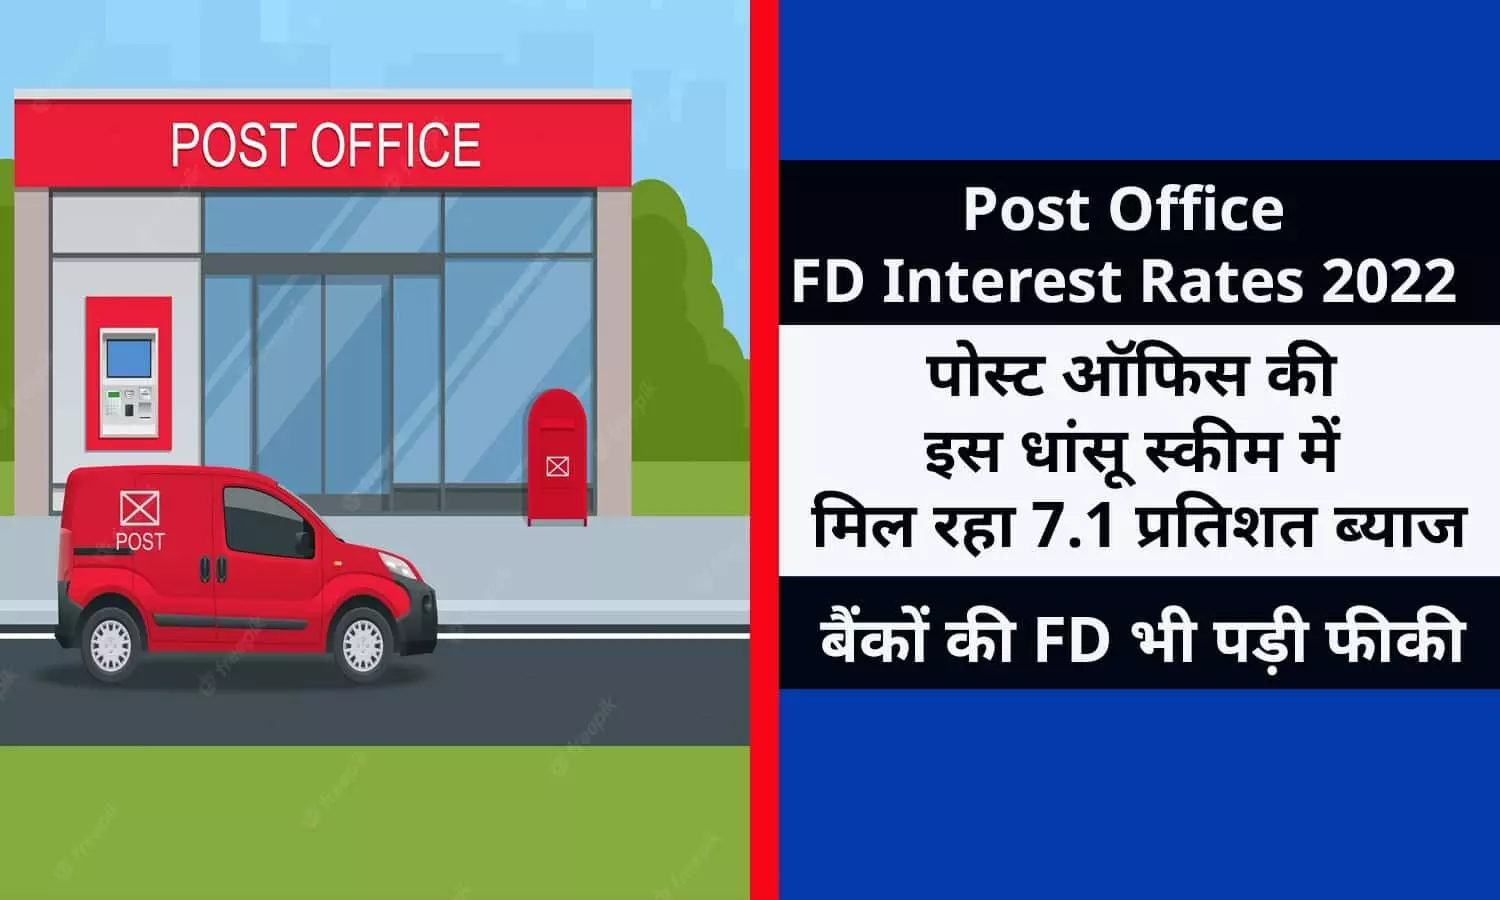 Post Office FD Interest Rates 2022 In Hindi: पोस्ट ऑफिस की इस धांसू स्कीम में मिल रहा 7.1 प्रतिशत ब्याज, बैंकों की FD भी पड़ी फीकी